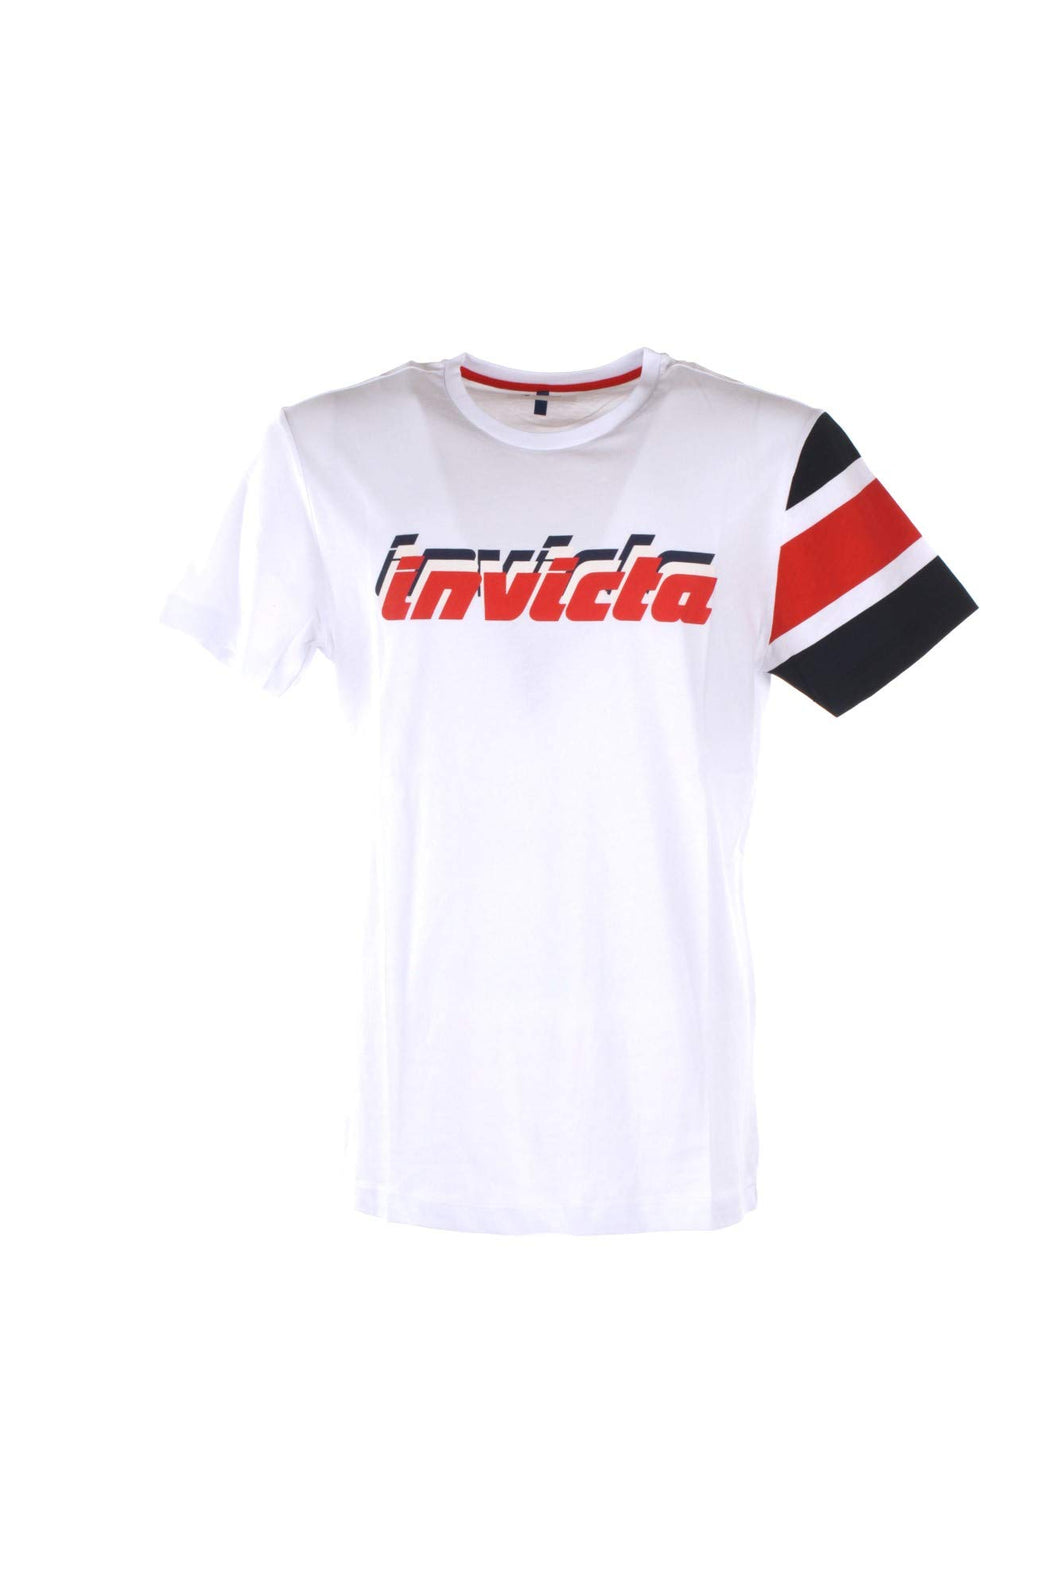 invicta T-Shirt Bianca in Cotone con Stampa Logo - L